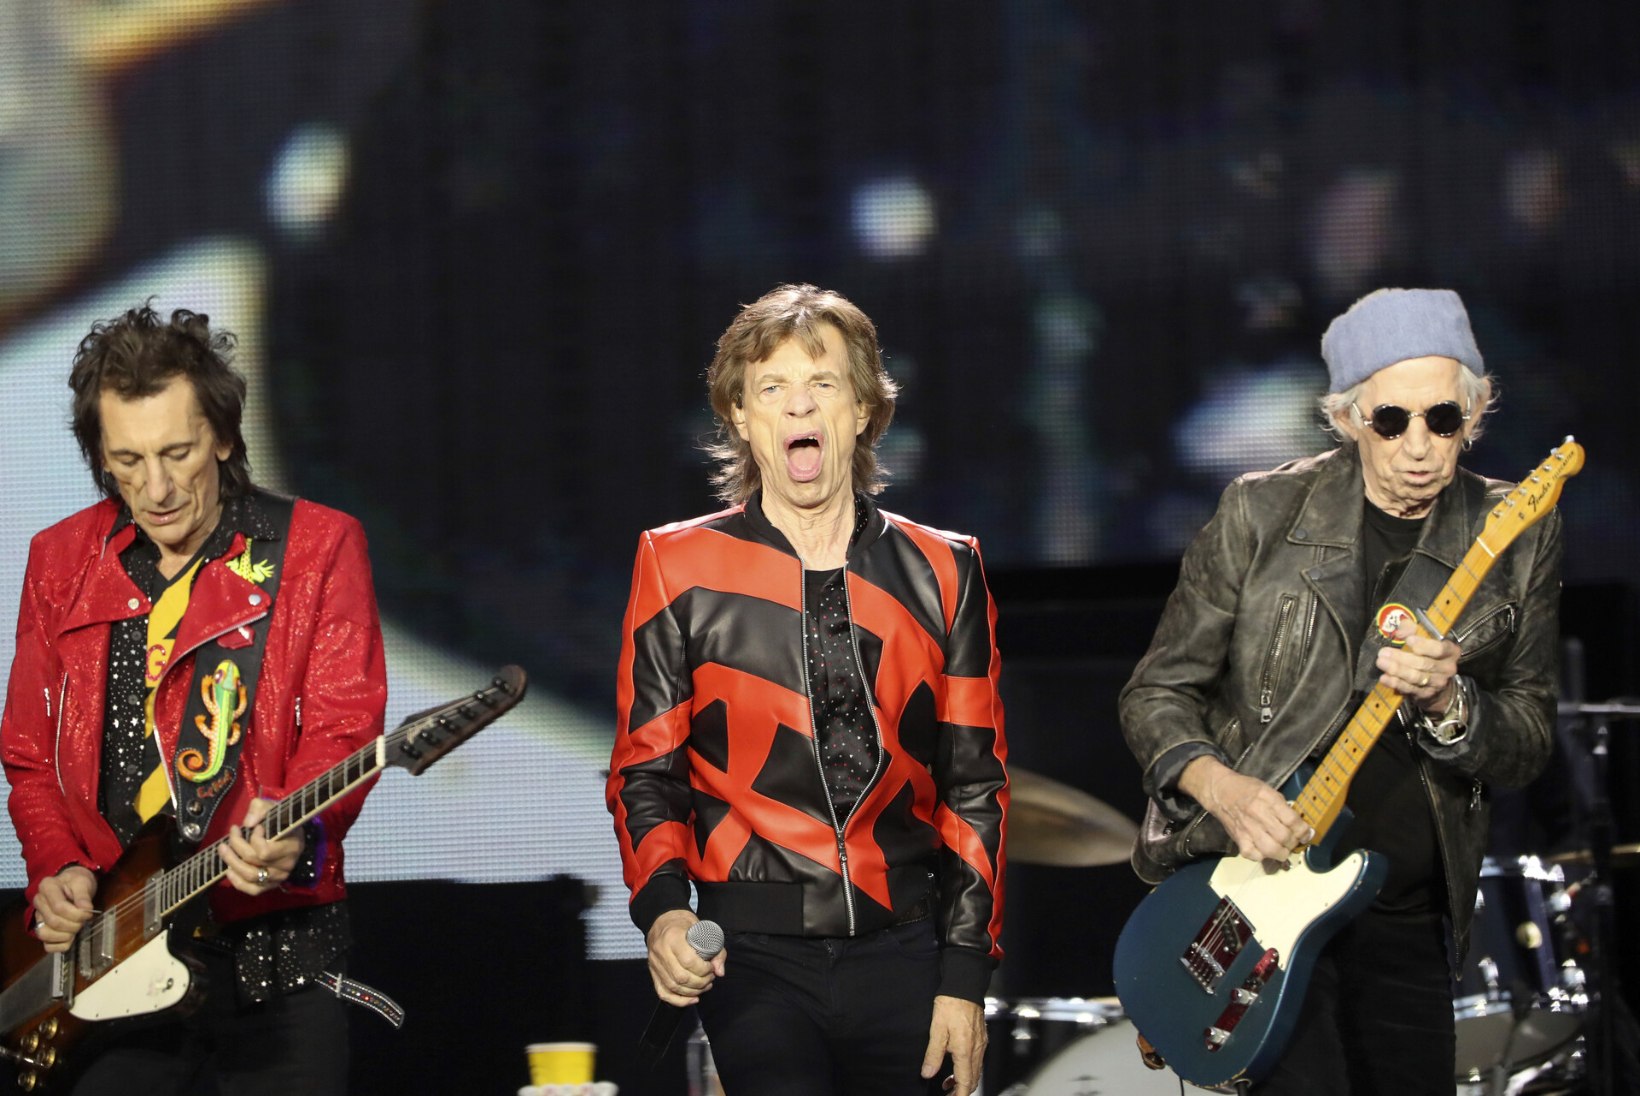 Uus kõmuraamat: Mick Jagger on seksinud kahe bändikaaslasega!